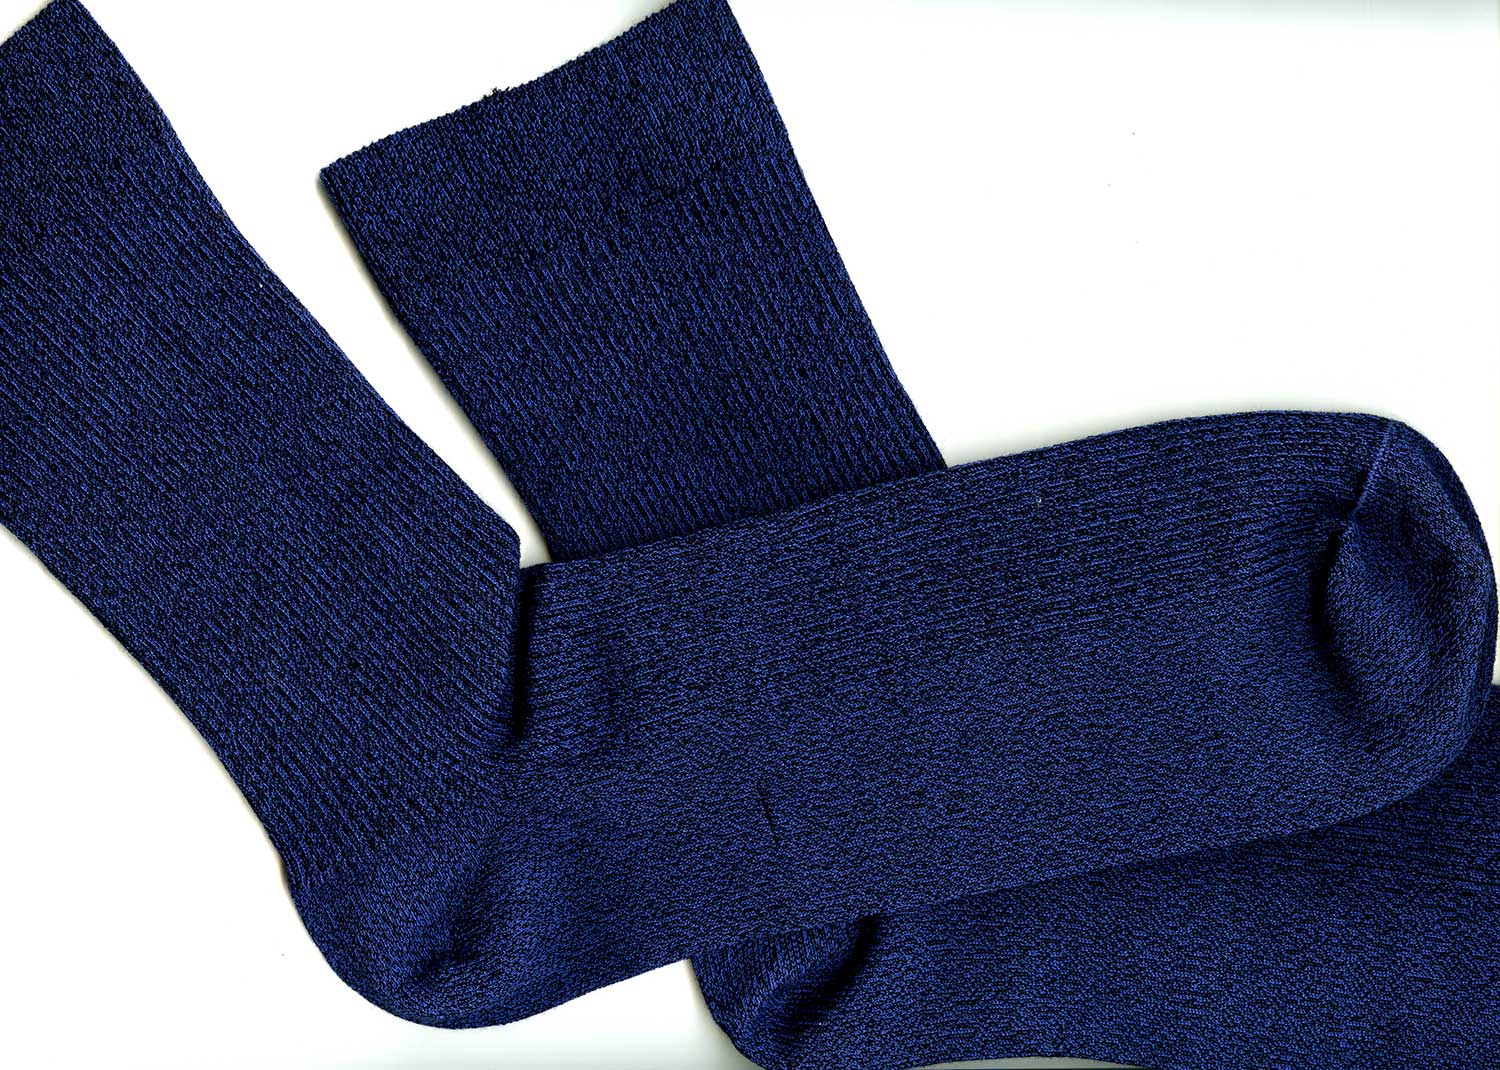 Дежурные мужские носки в рубчик Omsa 301 Comfort ©bracatuS